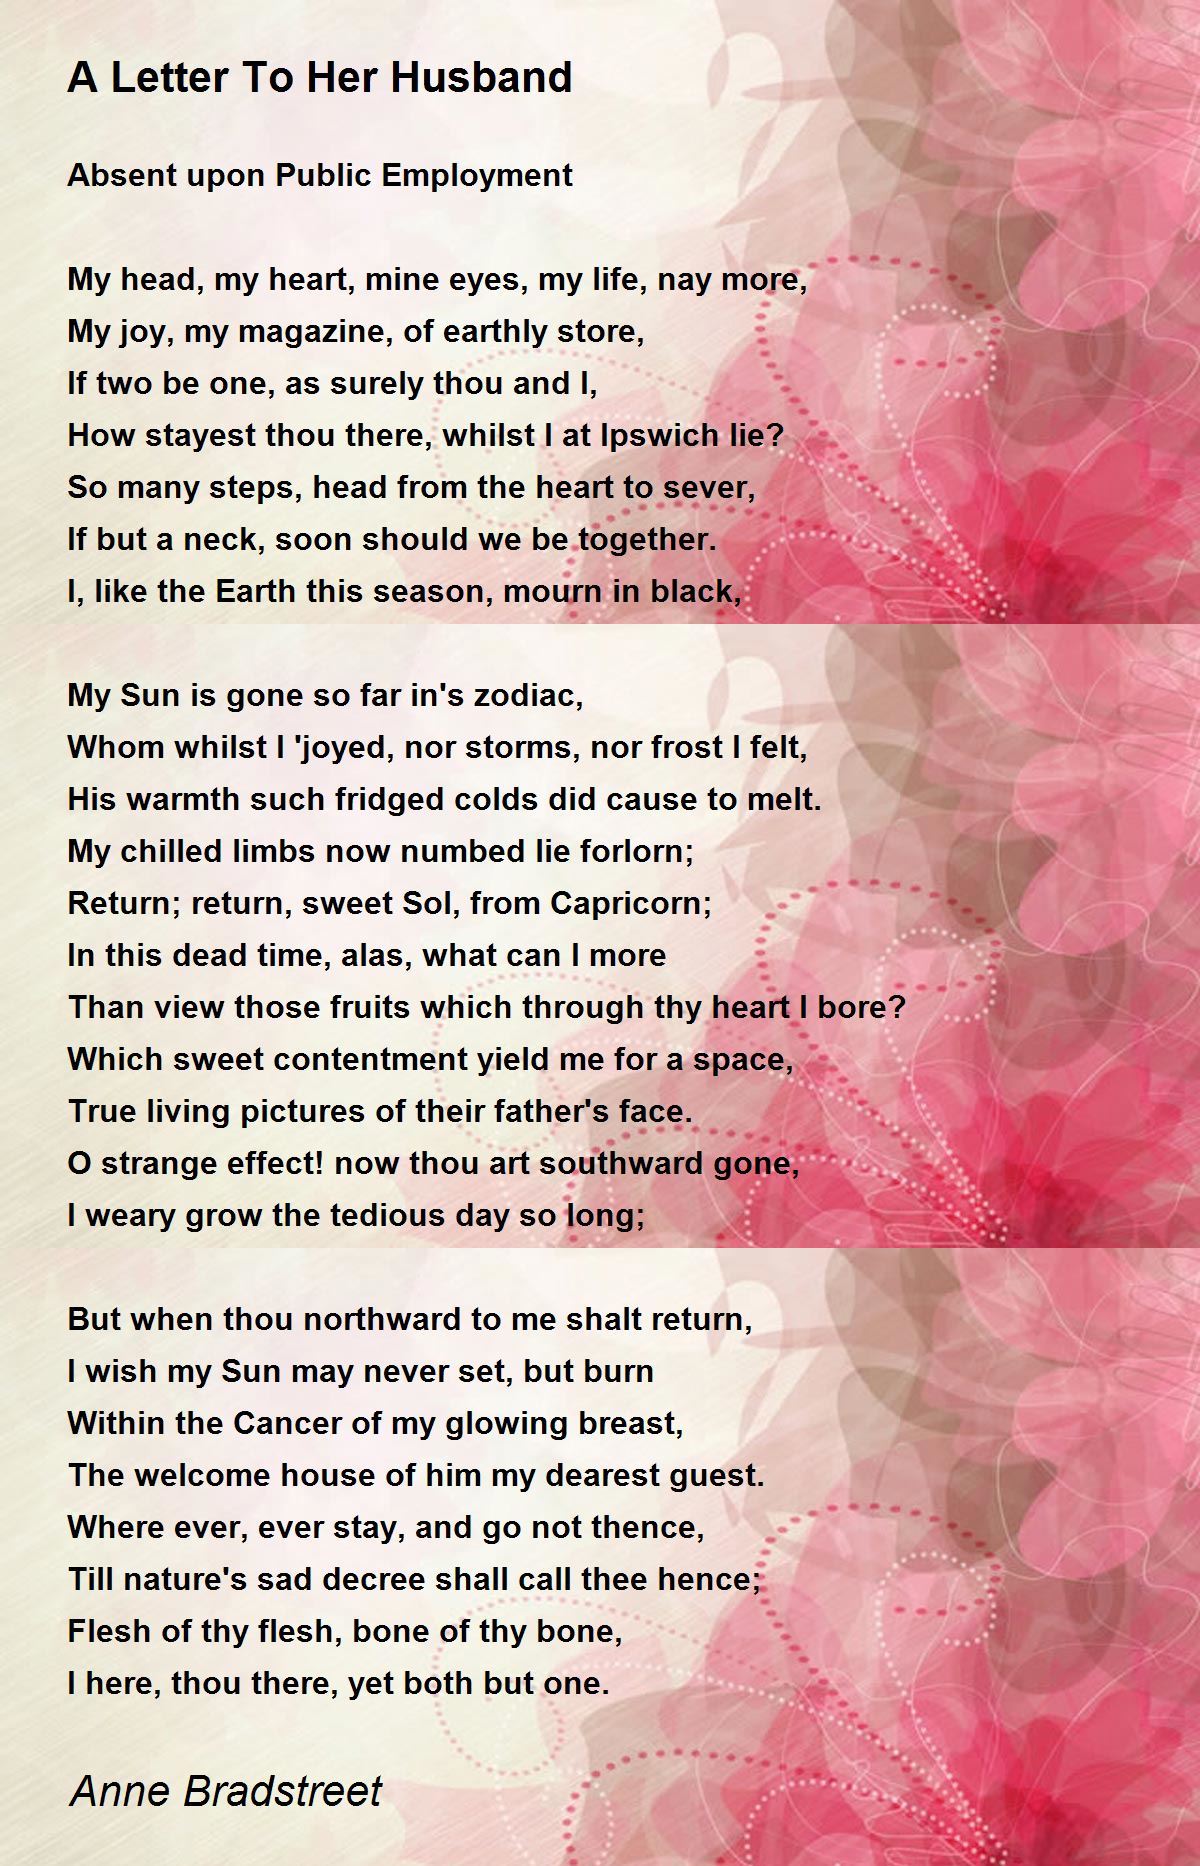 A Letter To Her Husband Poem by Anne Bradstreet - Poem Hunter